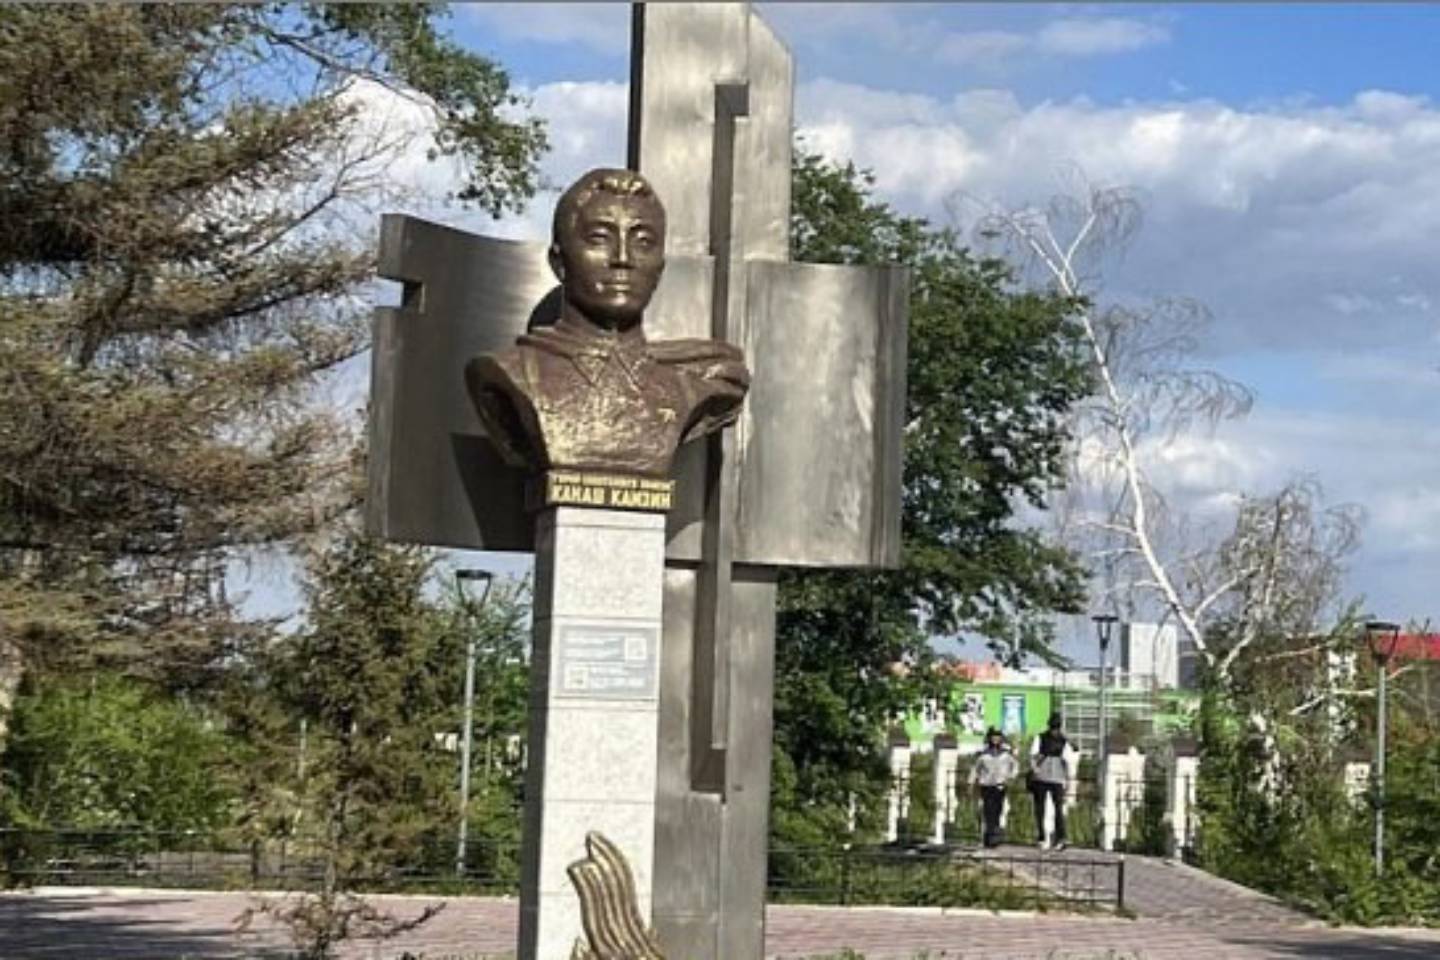 Происшествия в Казахстане и мире / QR-код с рекламой наркотиков нашли на памятнике в Павлодаре